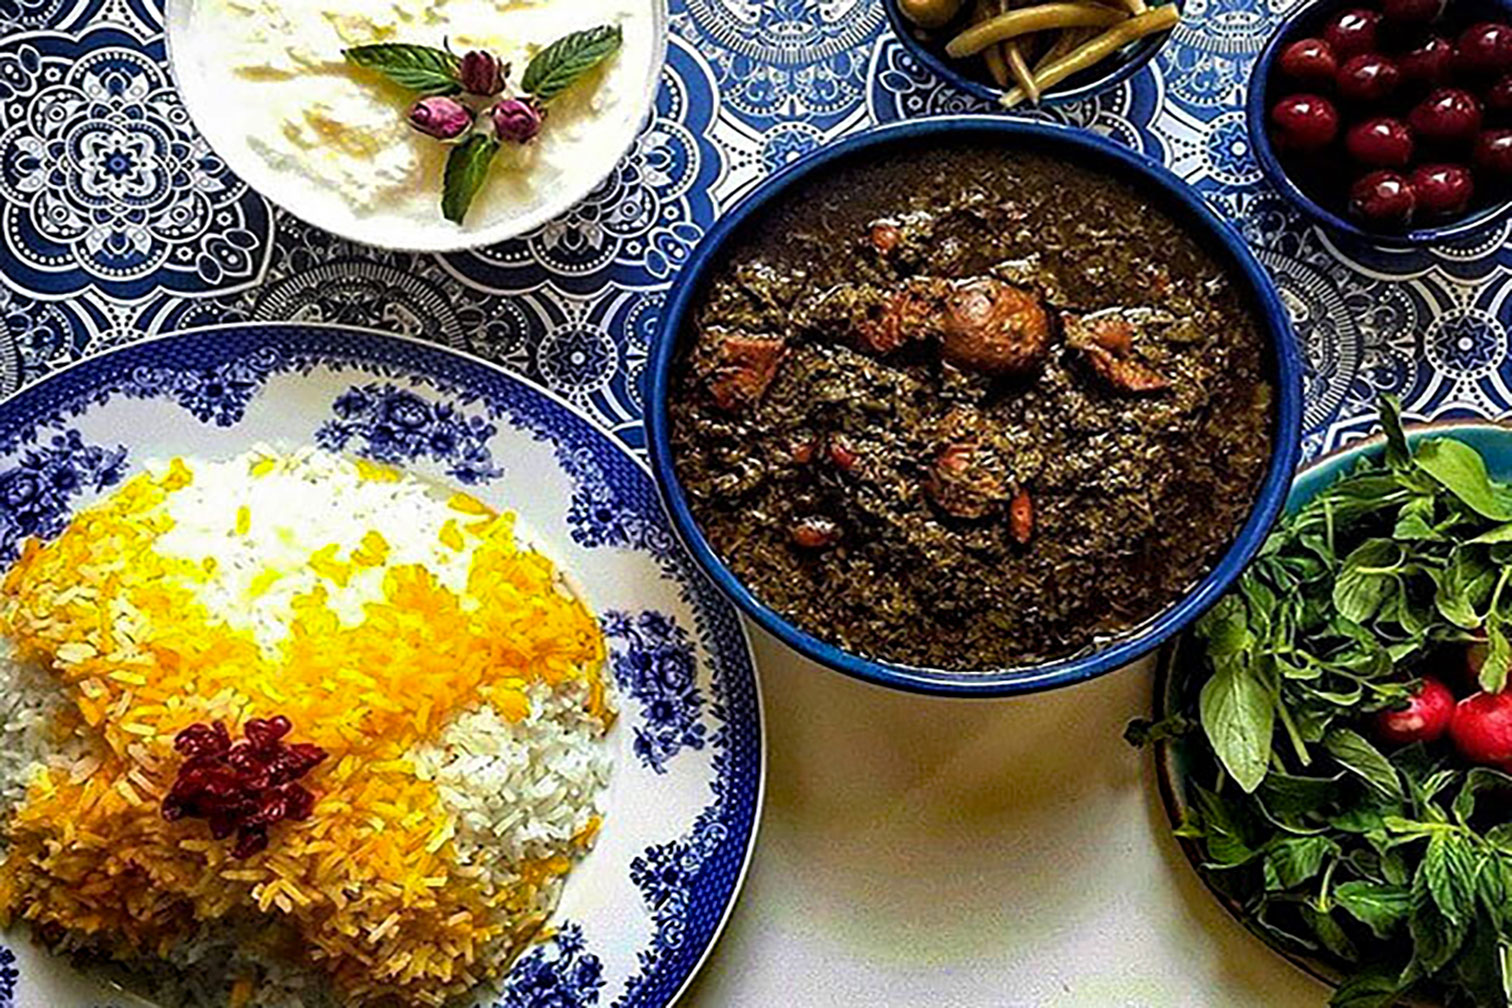 Best Iran cooking tours - Best Iran cooking tours